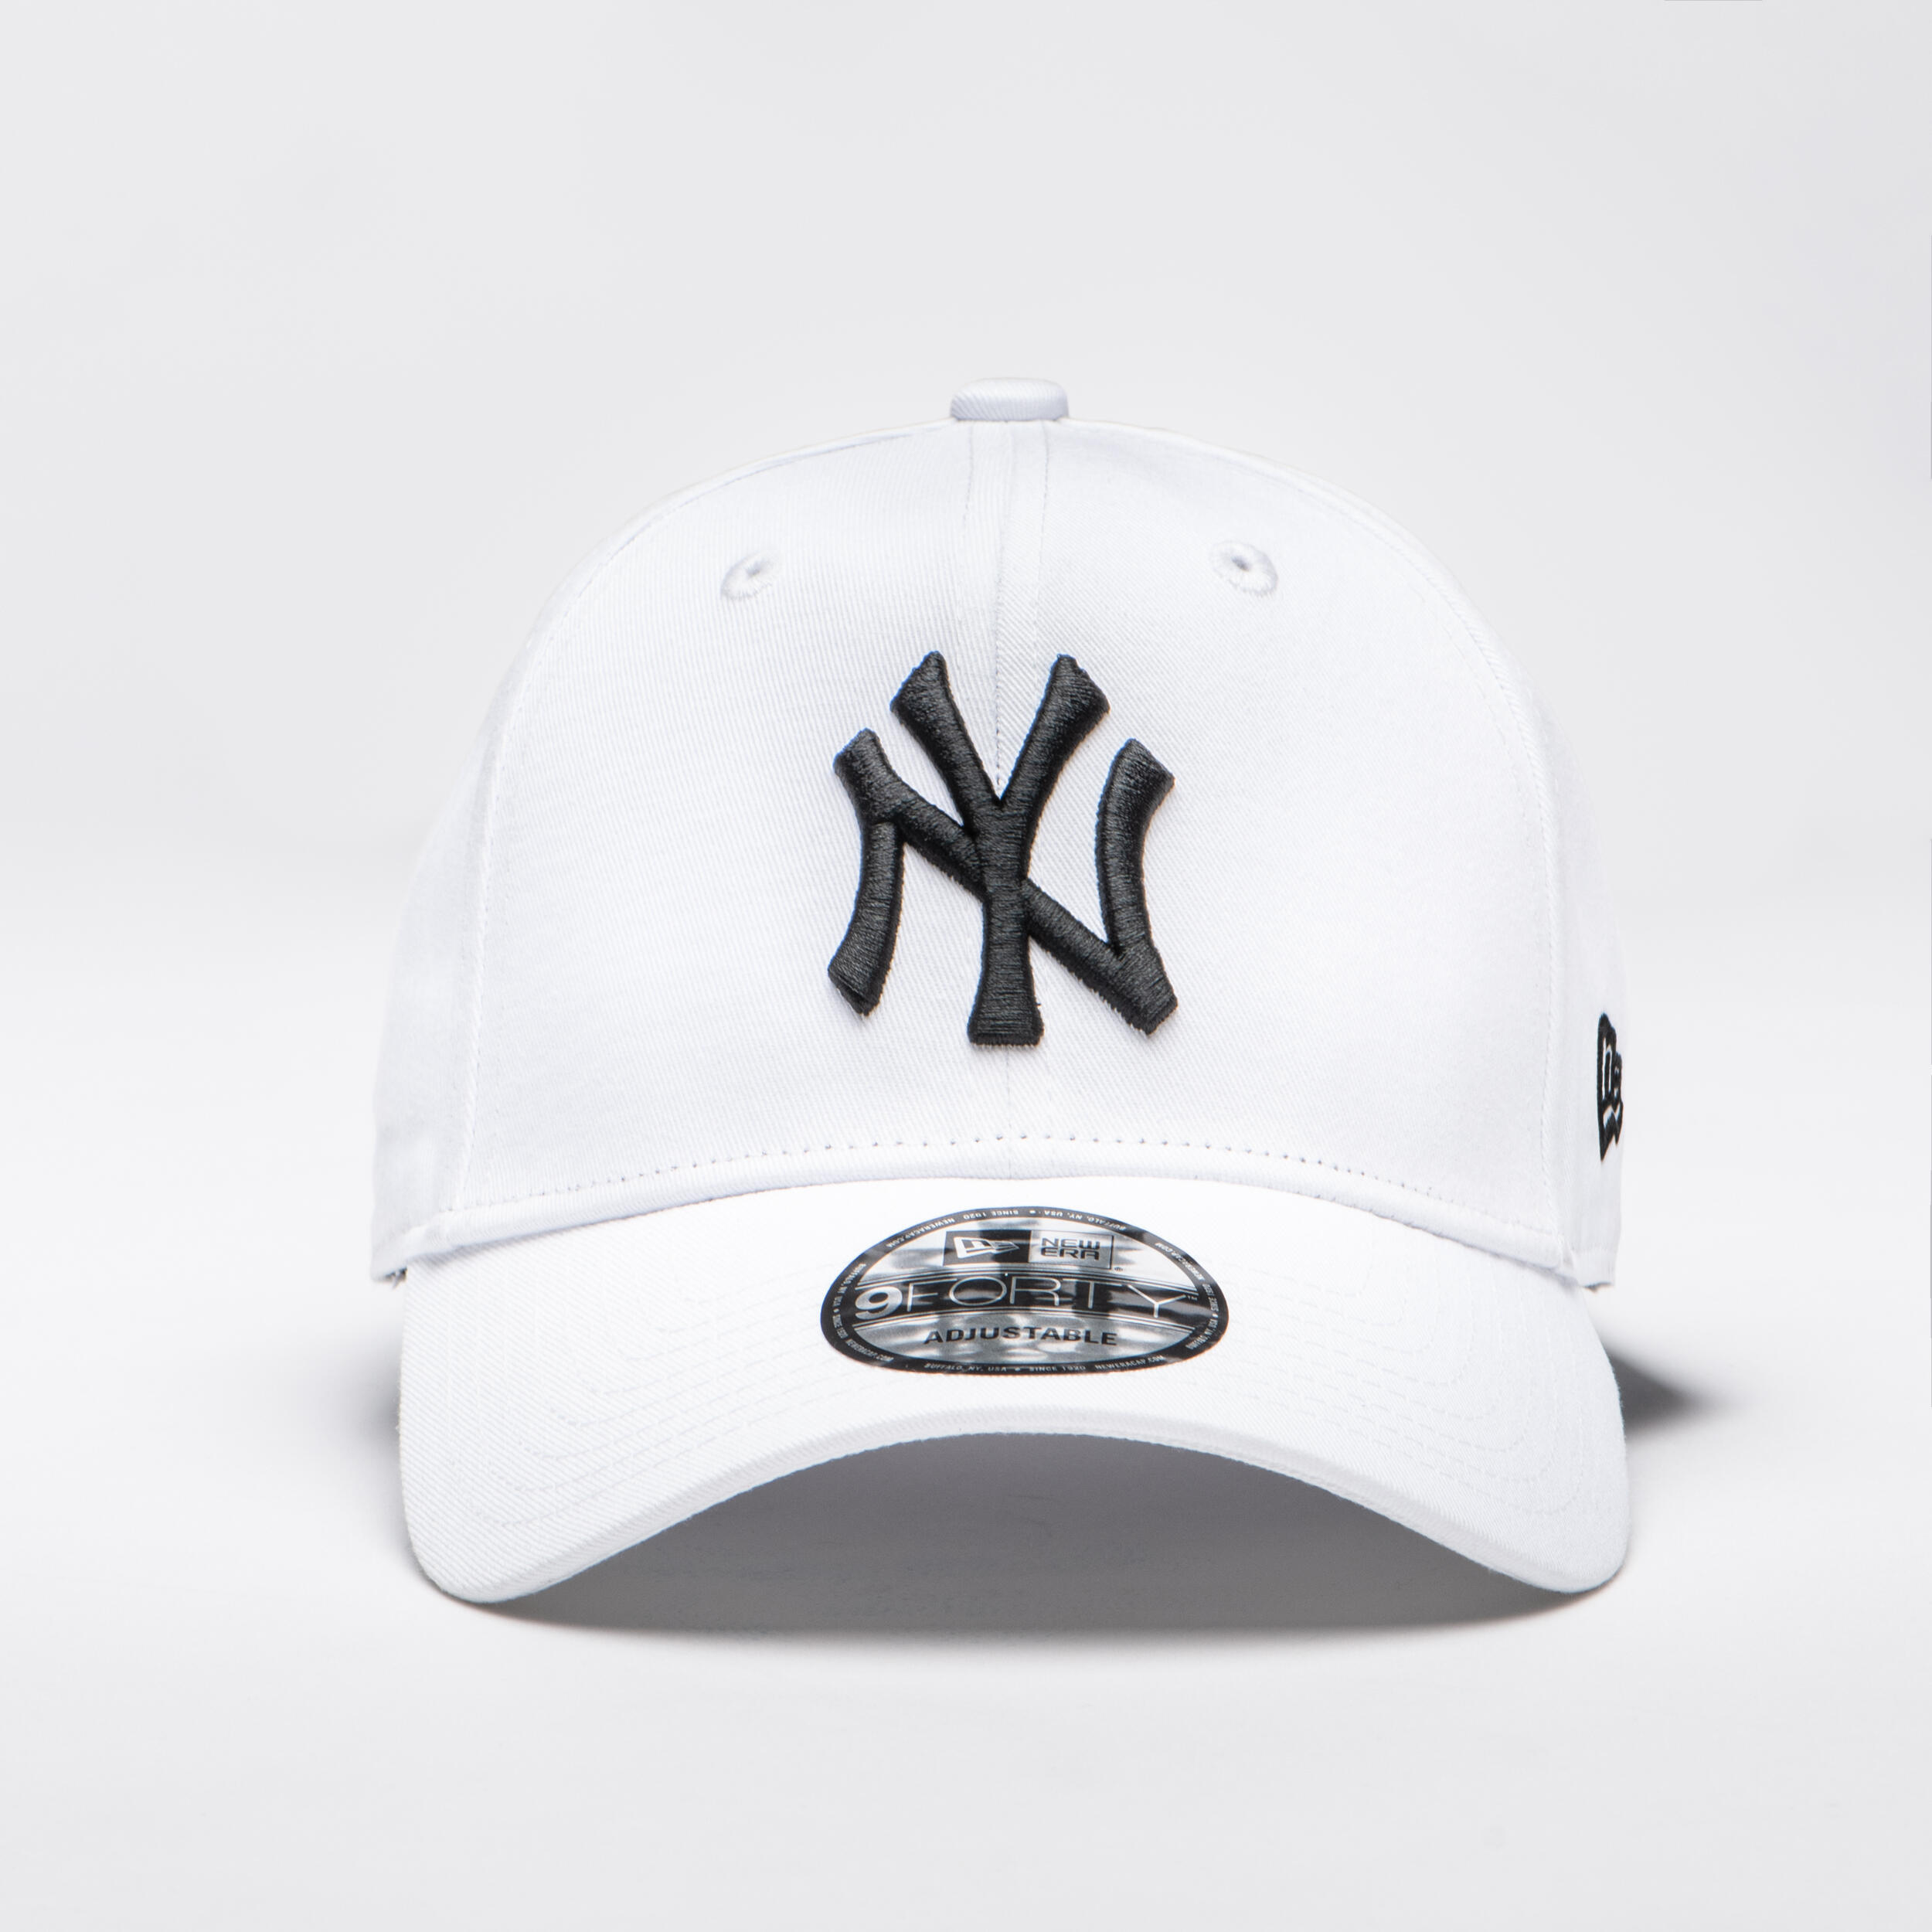 Men's / Women's MLB Baseball Cap New York Yankees - White 1/5